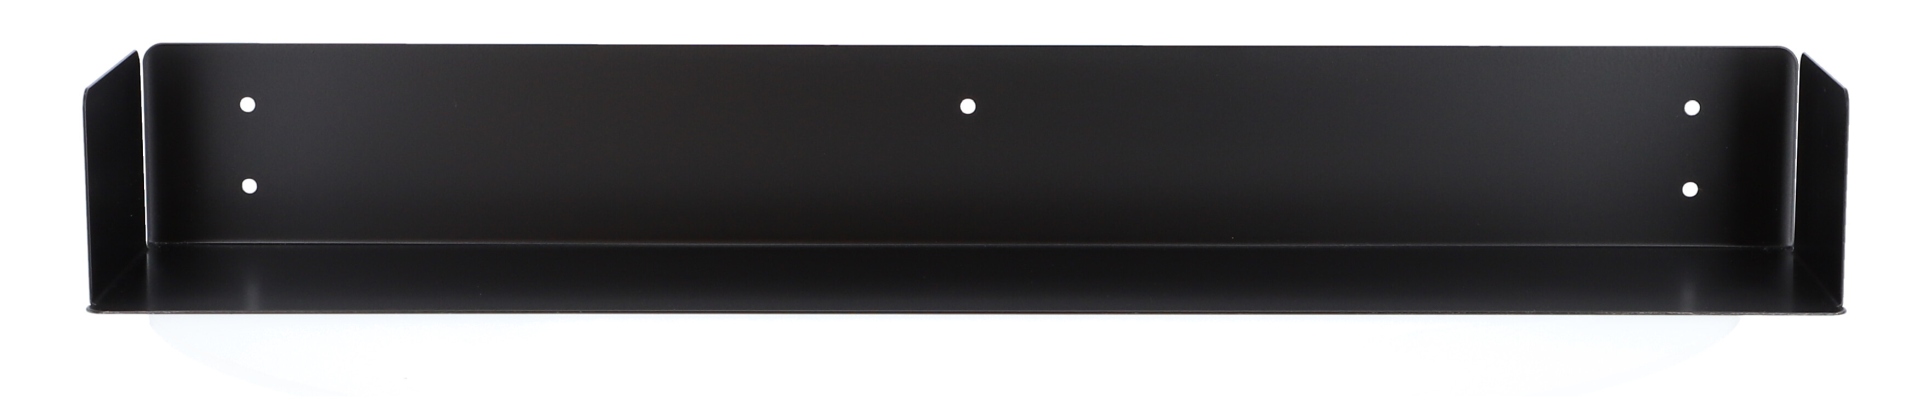 Das Wandregal Lyra wurde aus Metall gefertigt und hat einen schwarzen Farbton. Die Breite beträgt 80 cm. Das Design ist schlicht aber auch modern. Das Regal ist ein Produkt der Marke Jan Kurtz.